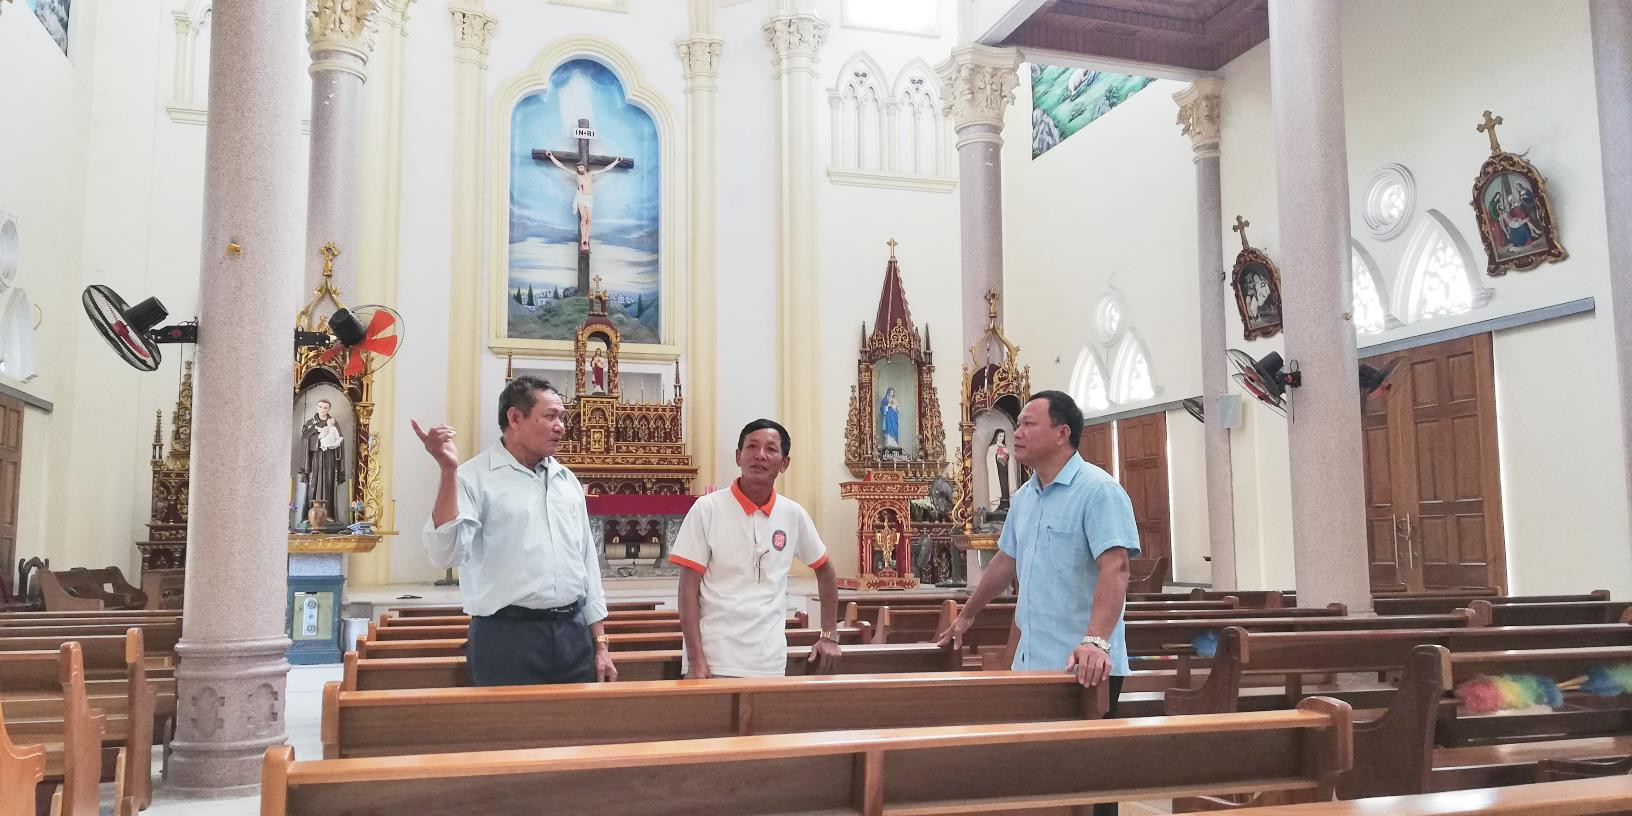 Ông Lâm (bên trái) chia sẻ kinh nghiệm đoàn kết lương giáo với lãnh đạo xã tại nhà thờ giáo họ Đông Khê. Ảnh: Mai Giang